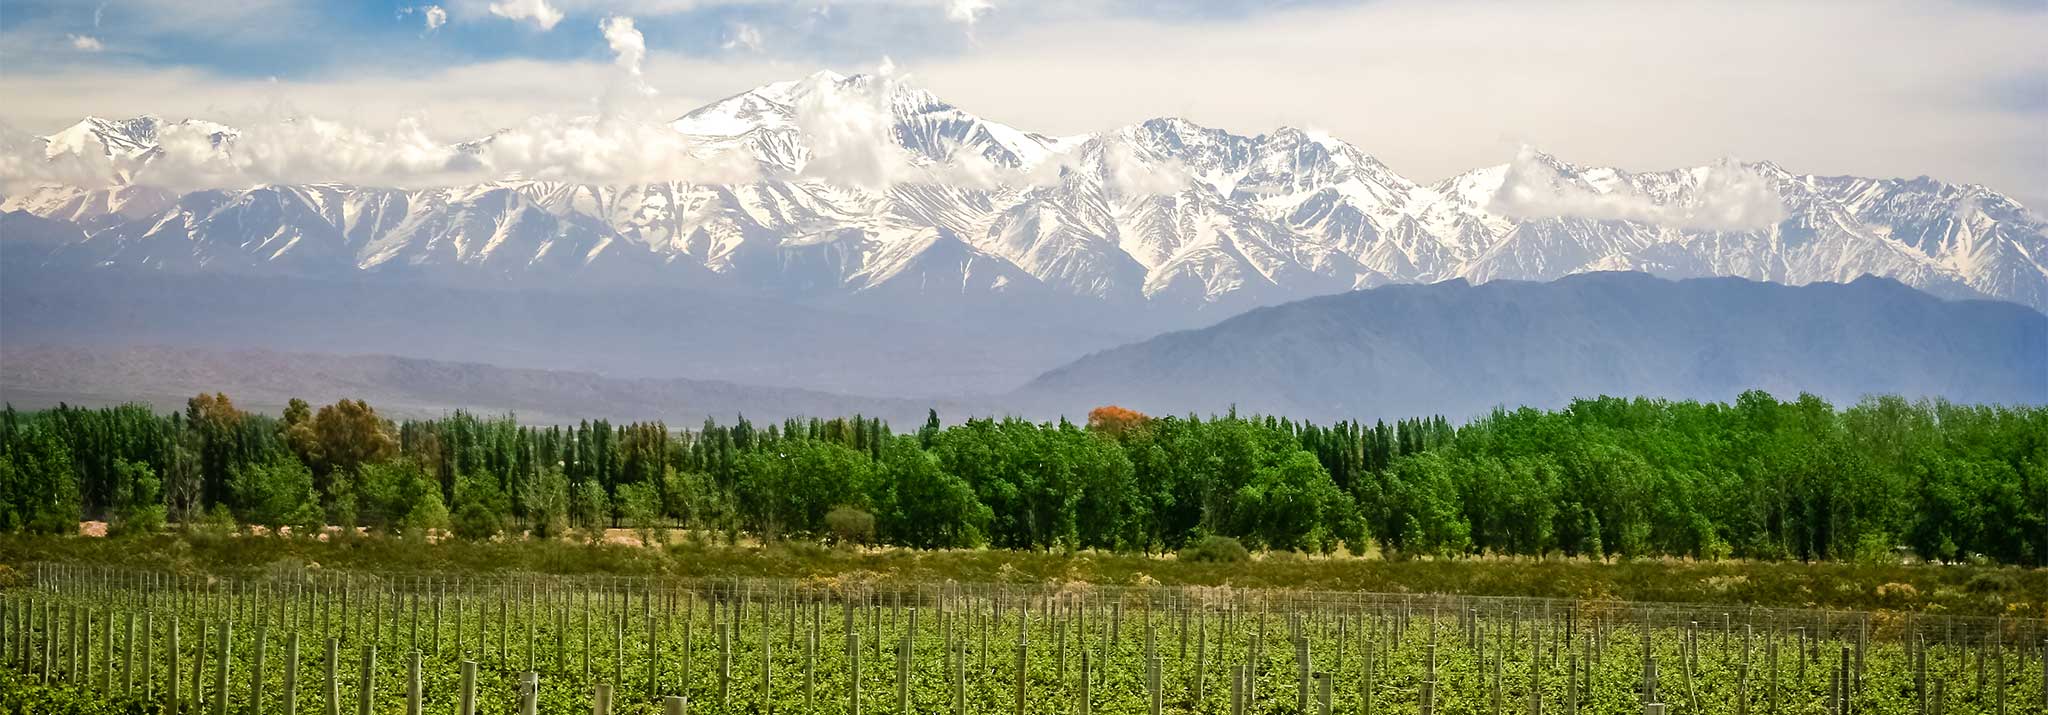 mundo-reves-valle-uco-mendoza-wines-argentina